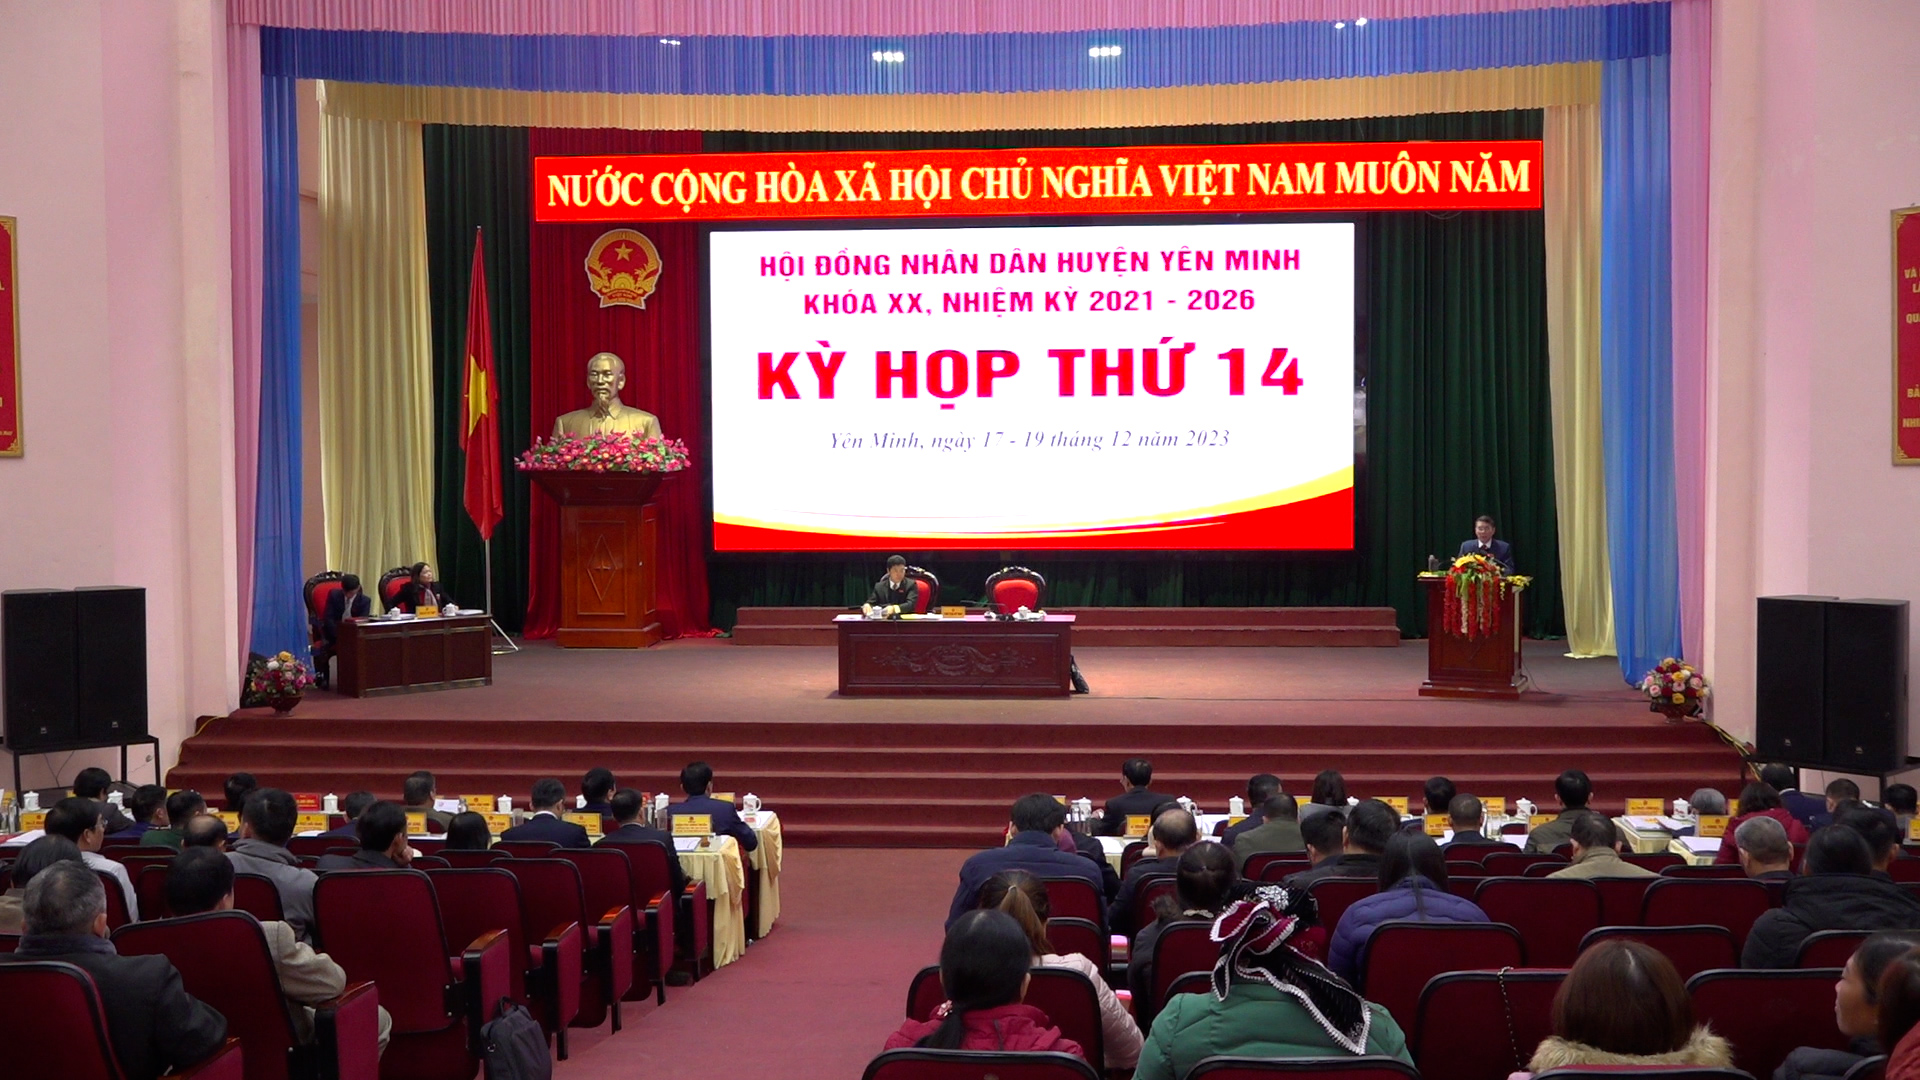 HĐND huyện Yên Minh tổ chức thành công kỳ họp thứ 14 khóa XX